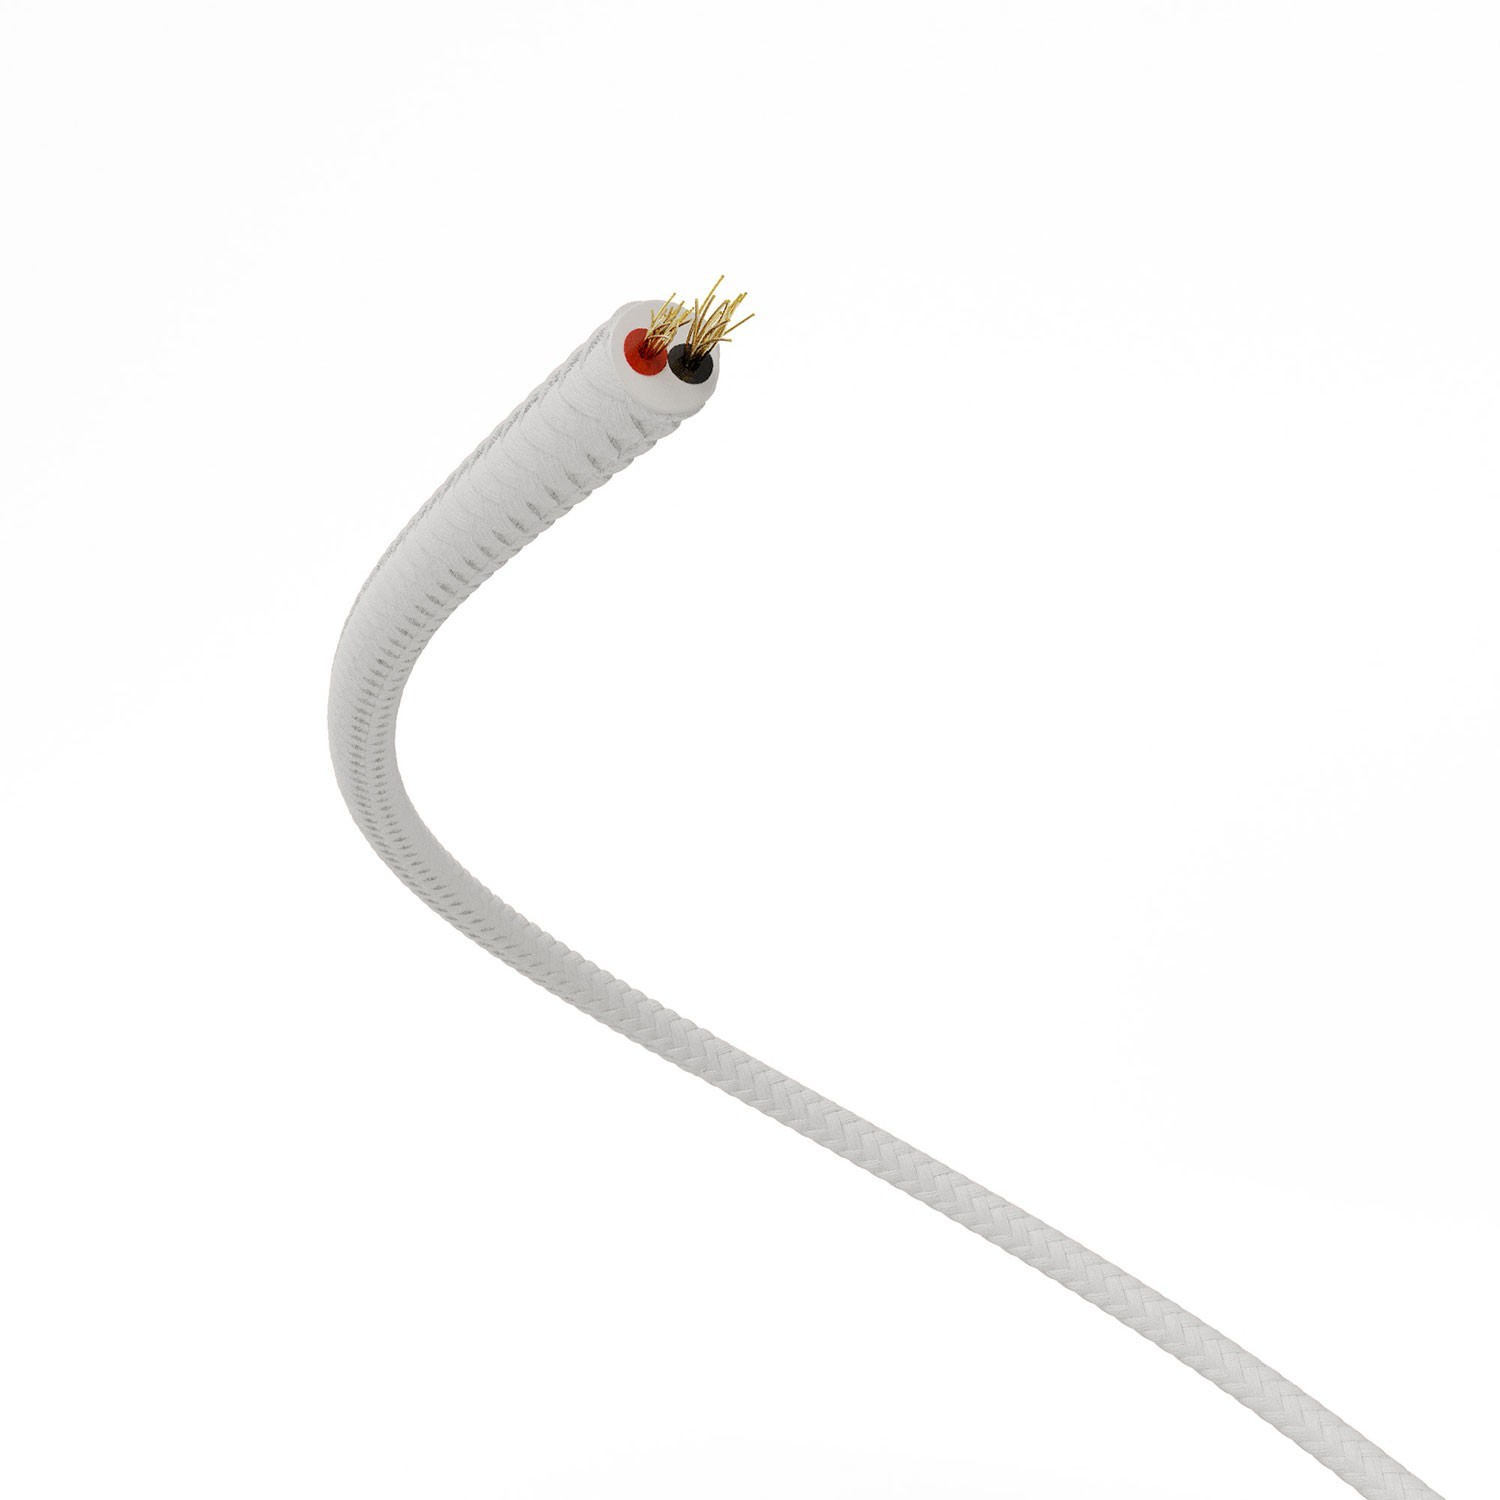 Cable de alimentación Extra Low Voltage revestido de tejido efecto seda Blanco RM01 - 50 m